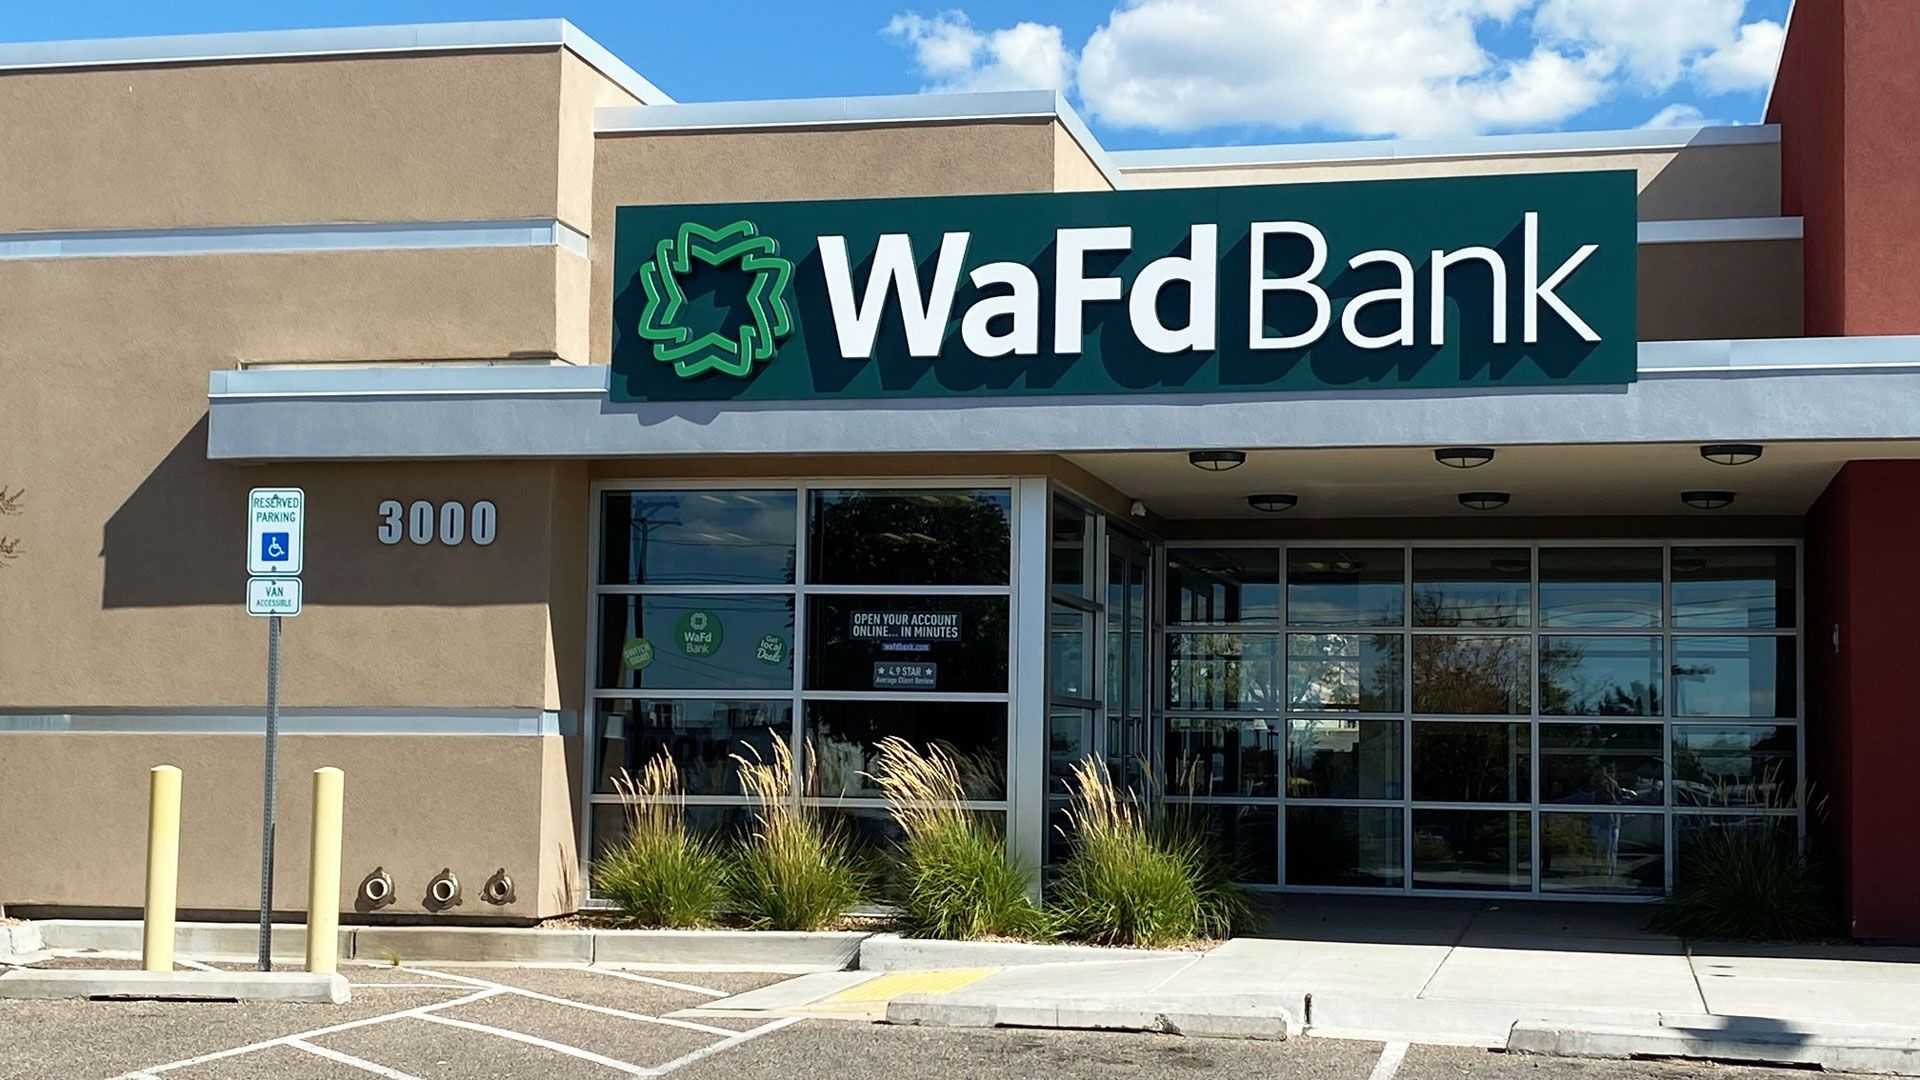 WaFd Bank in Albuquerque, NewMexico #1261 - Washington Federal.